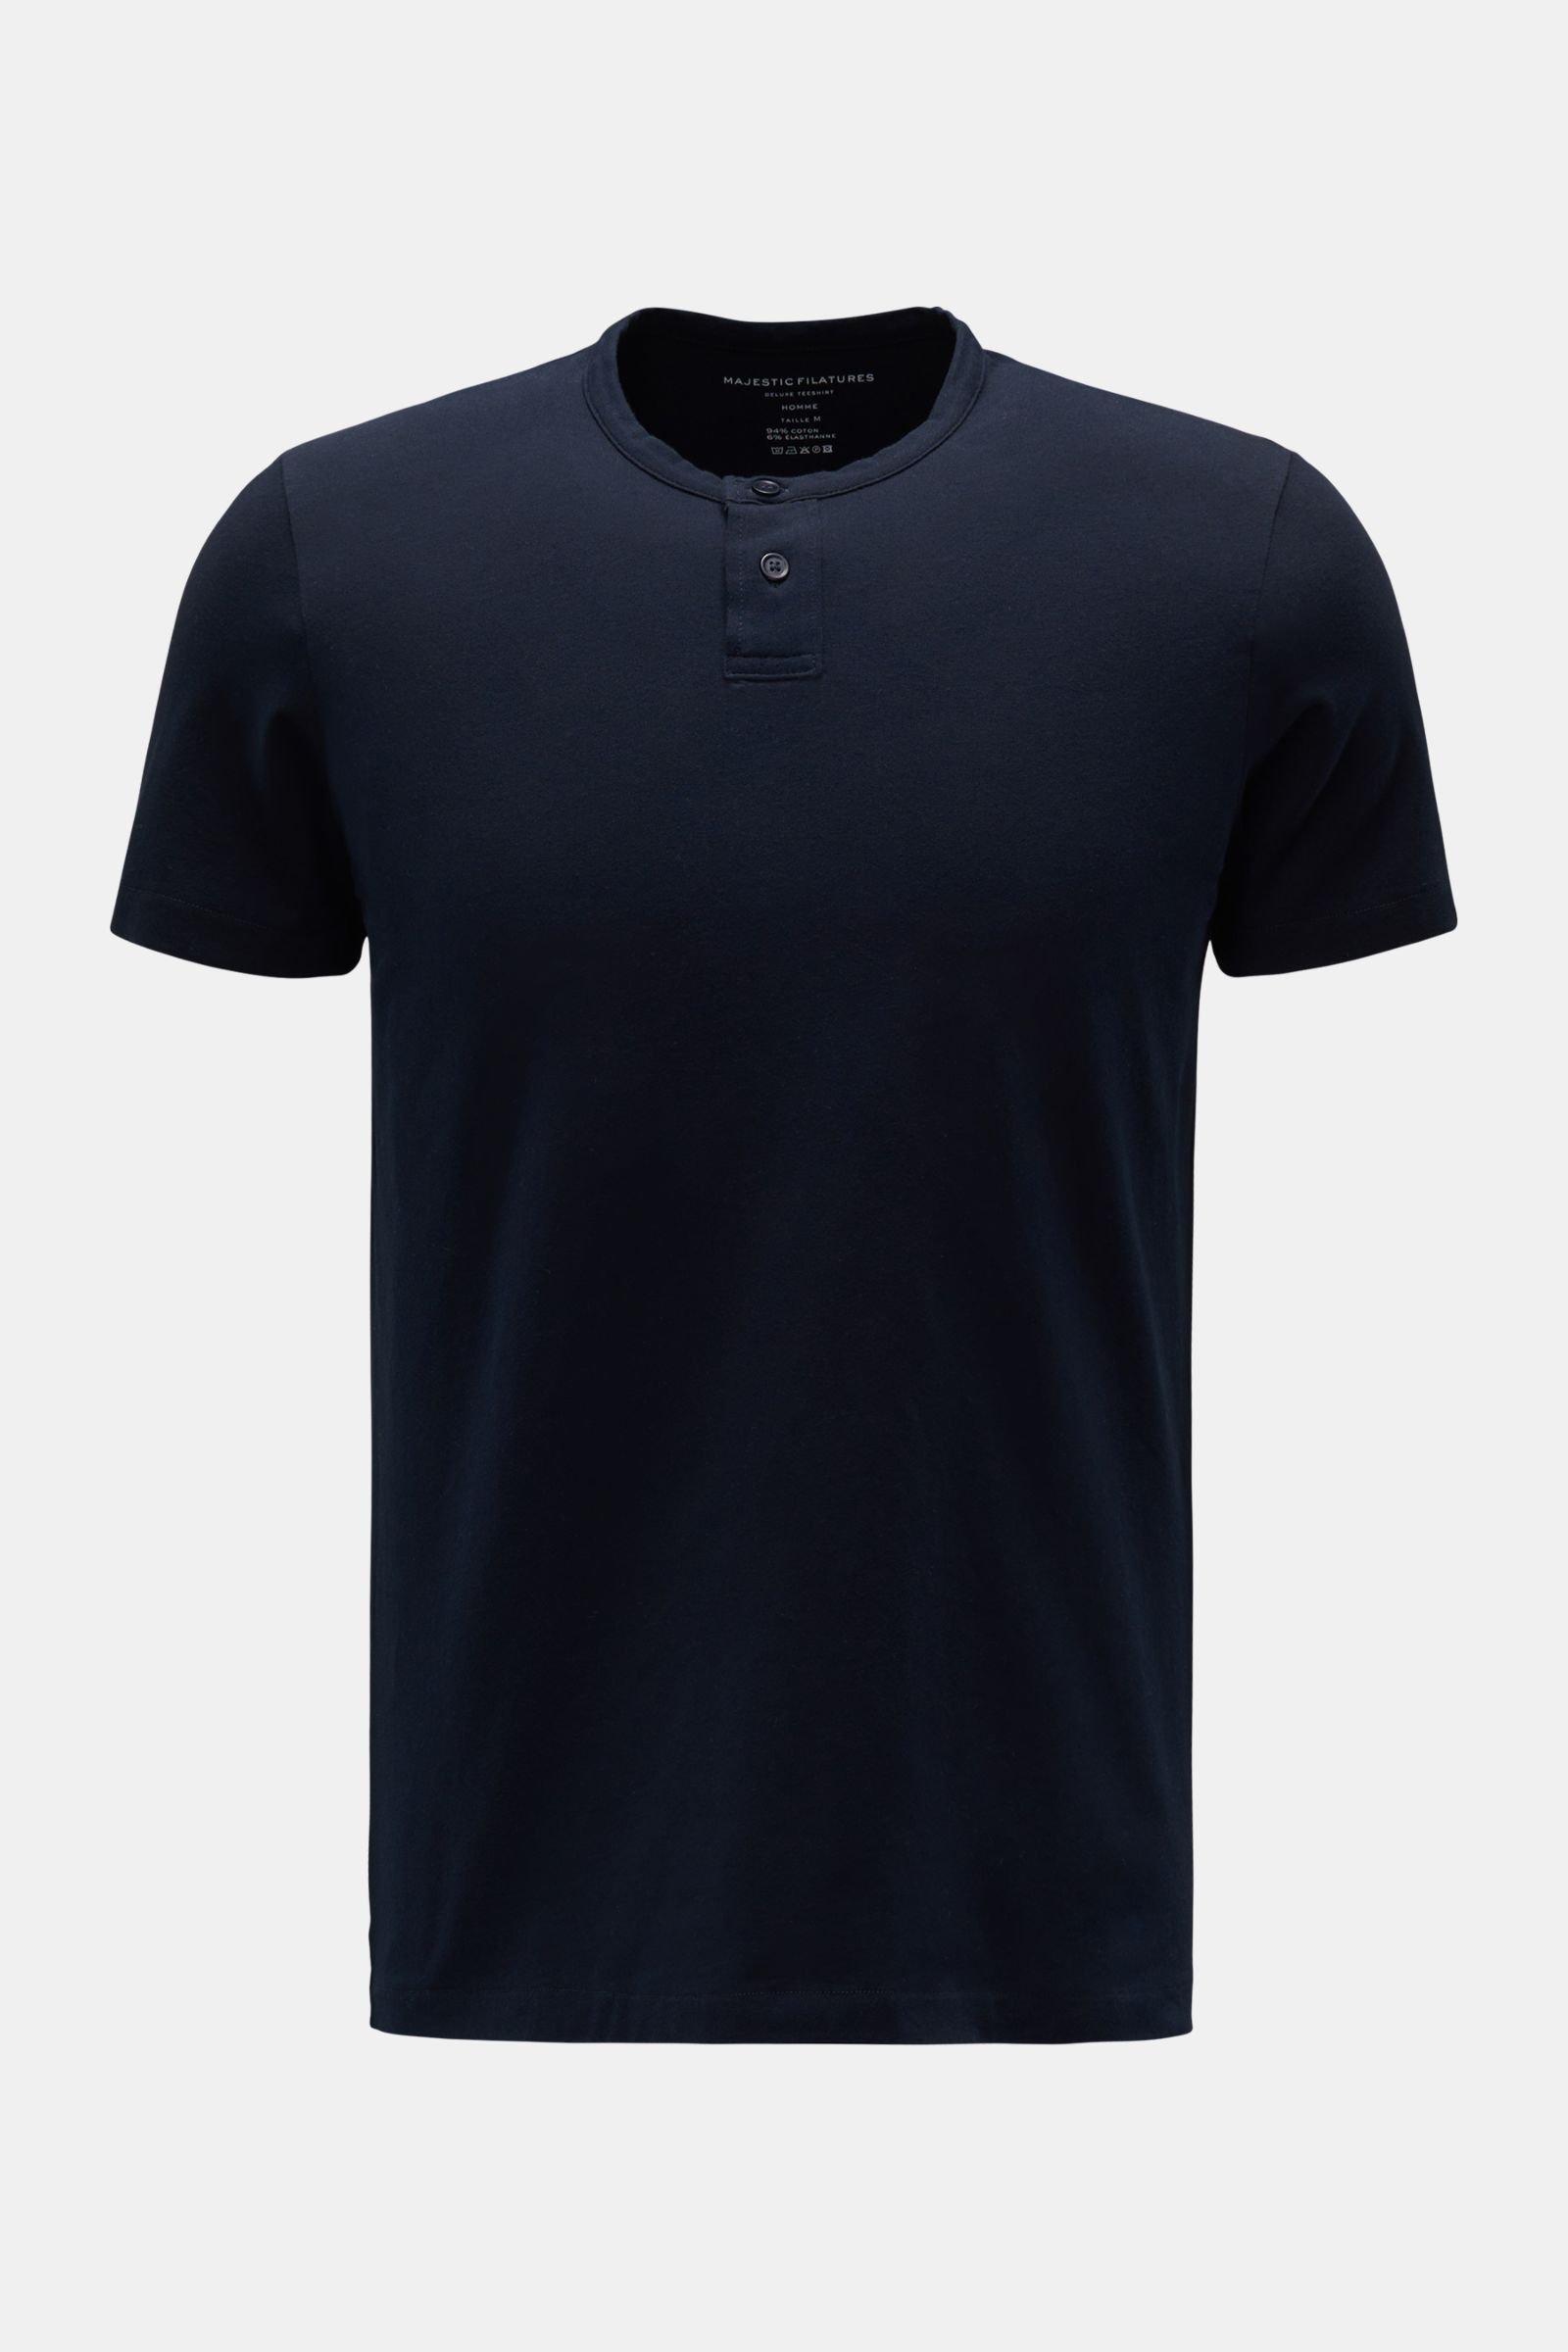 Henley T-shirt dark navy